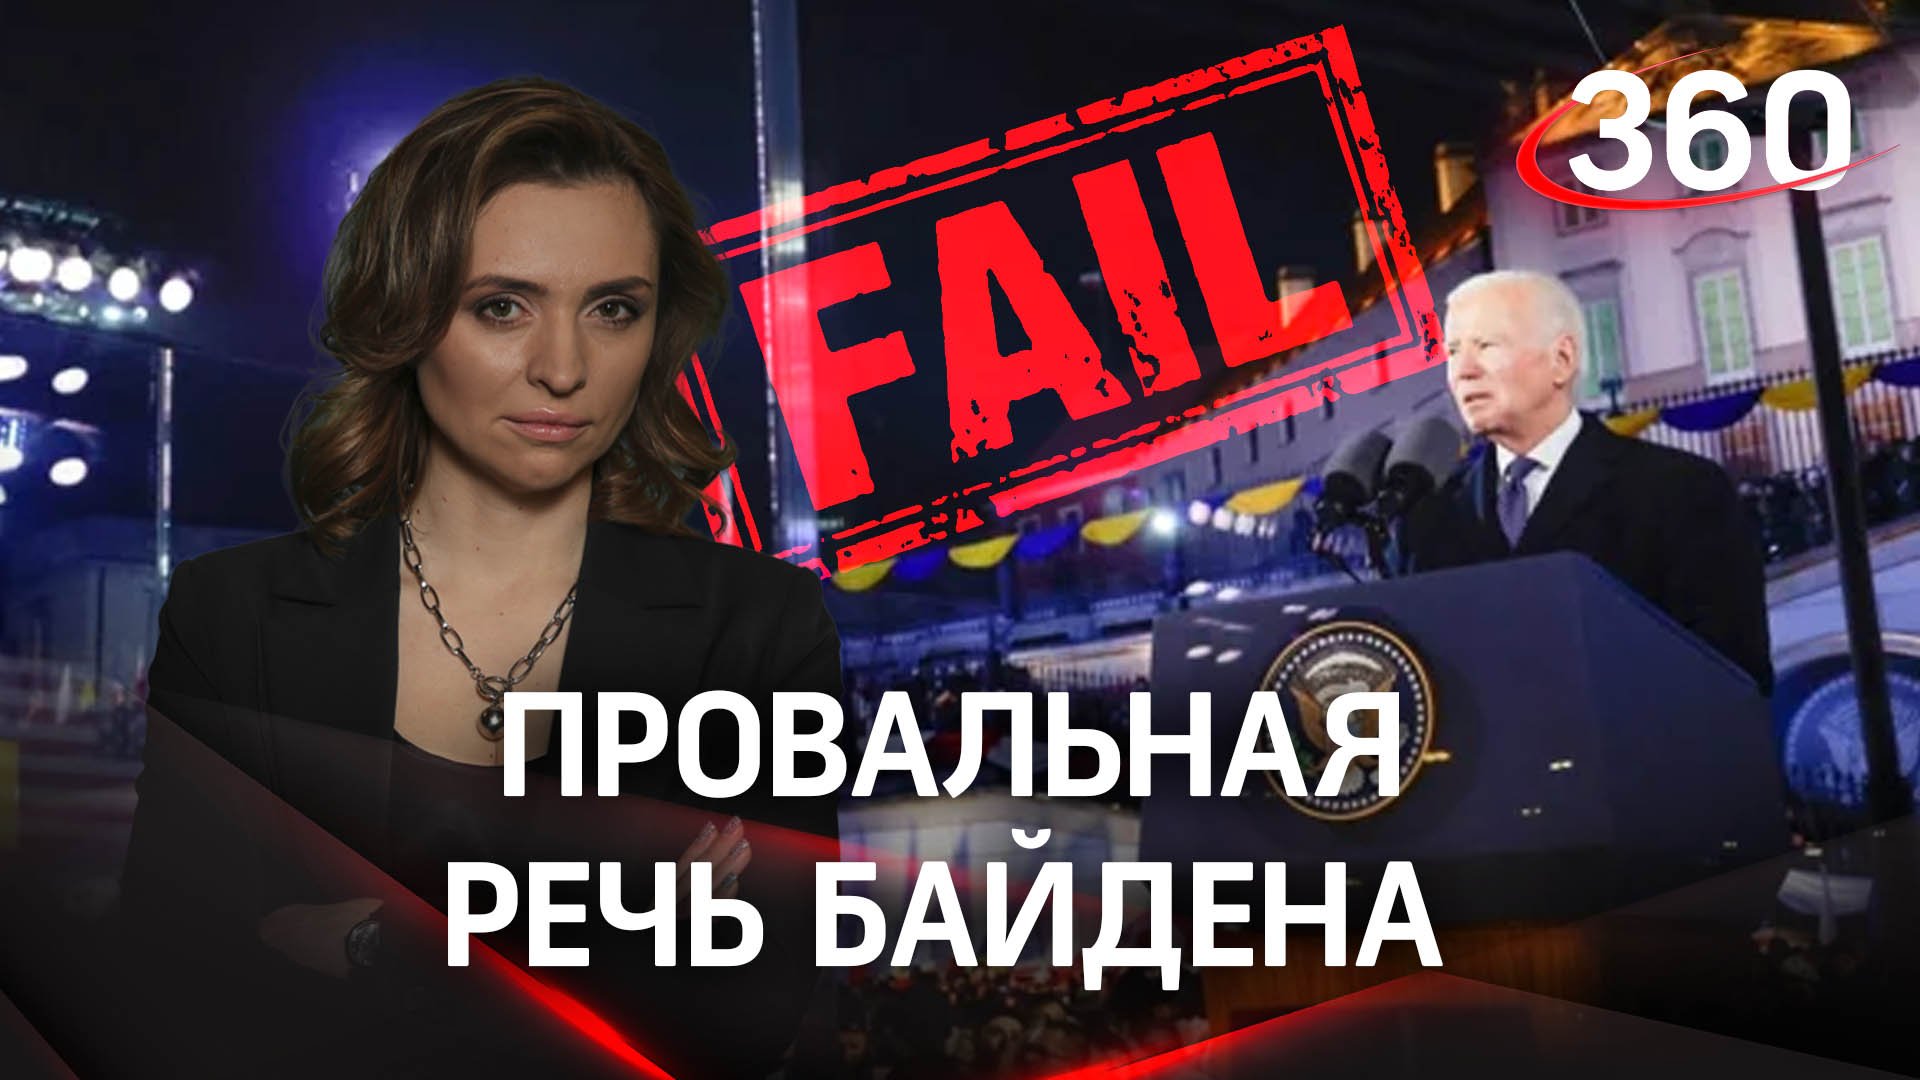 Почему речь Байдена посчитали провальной? Екатерина Малашенко